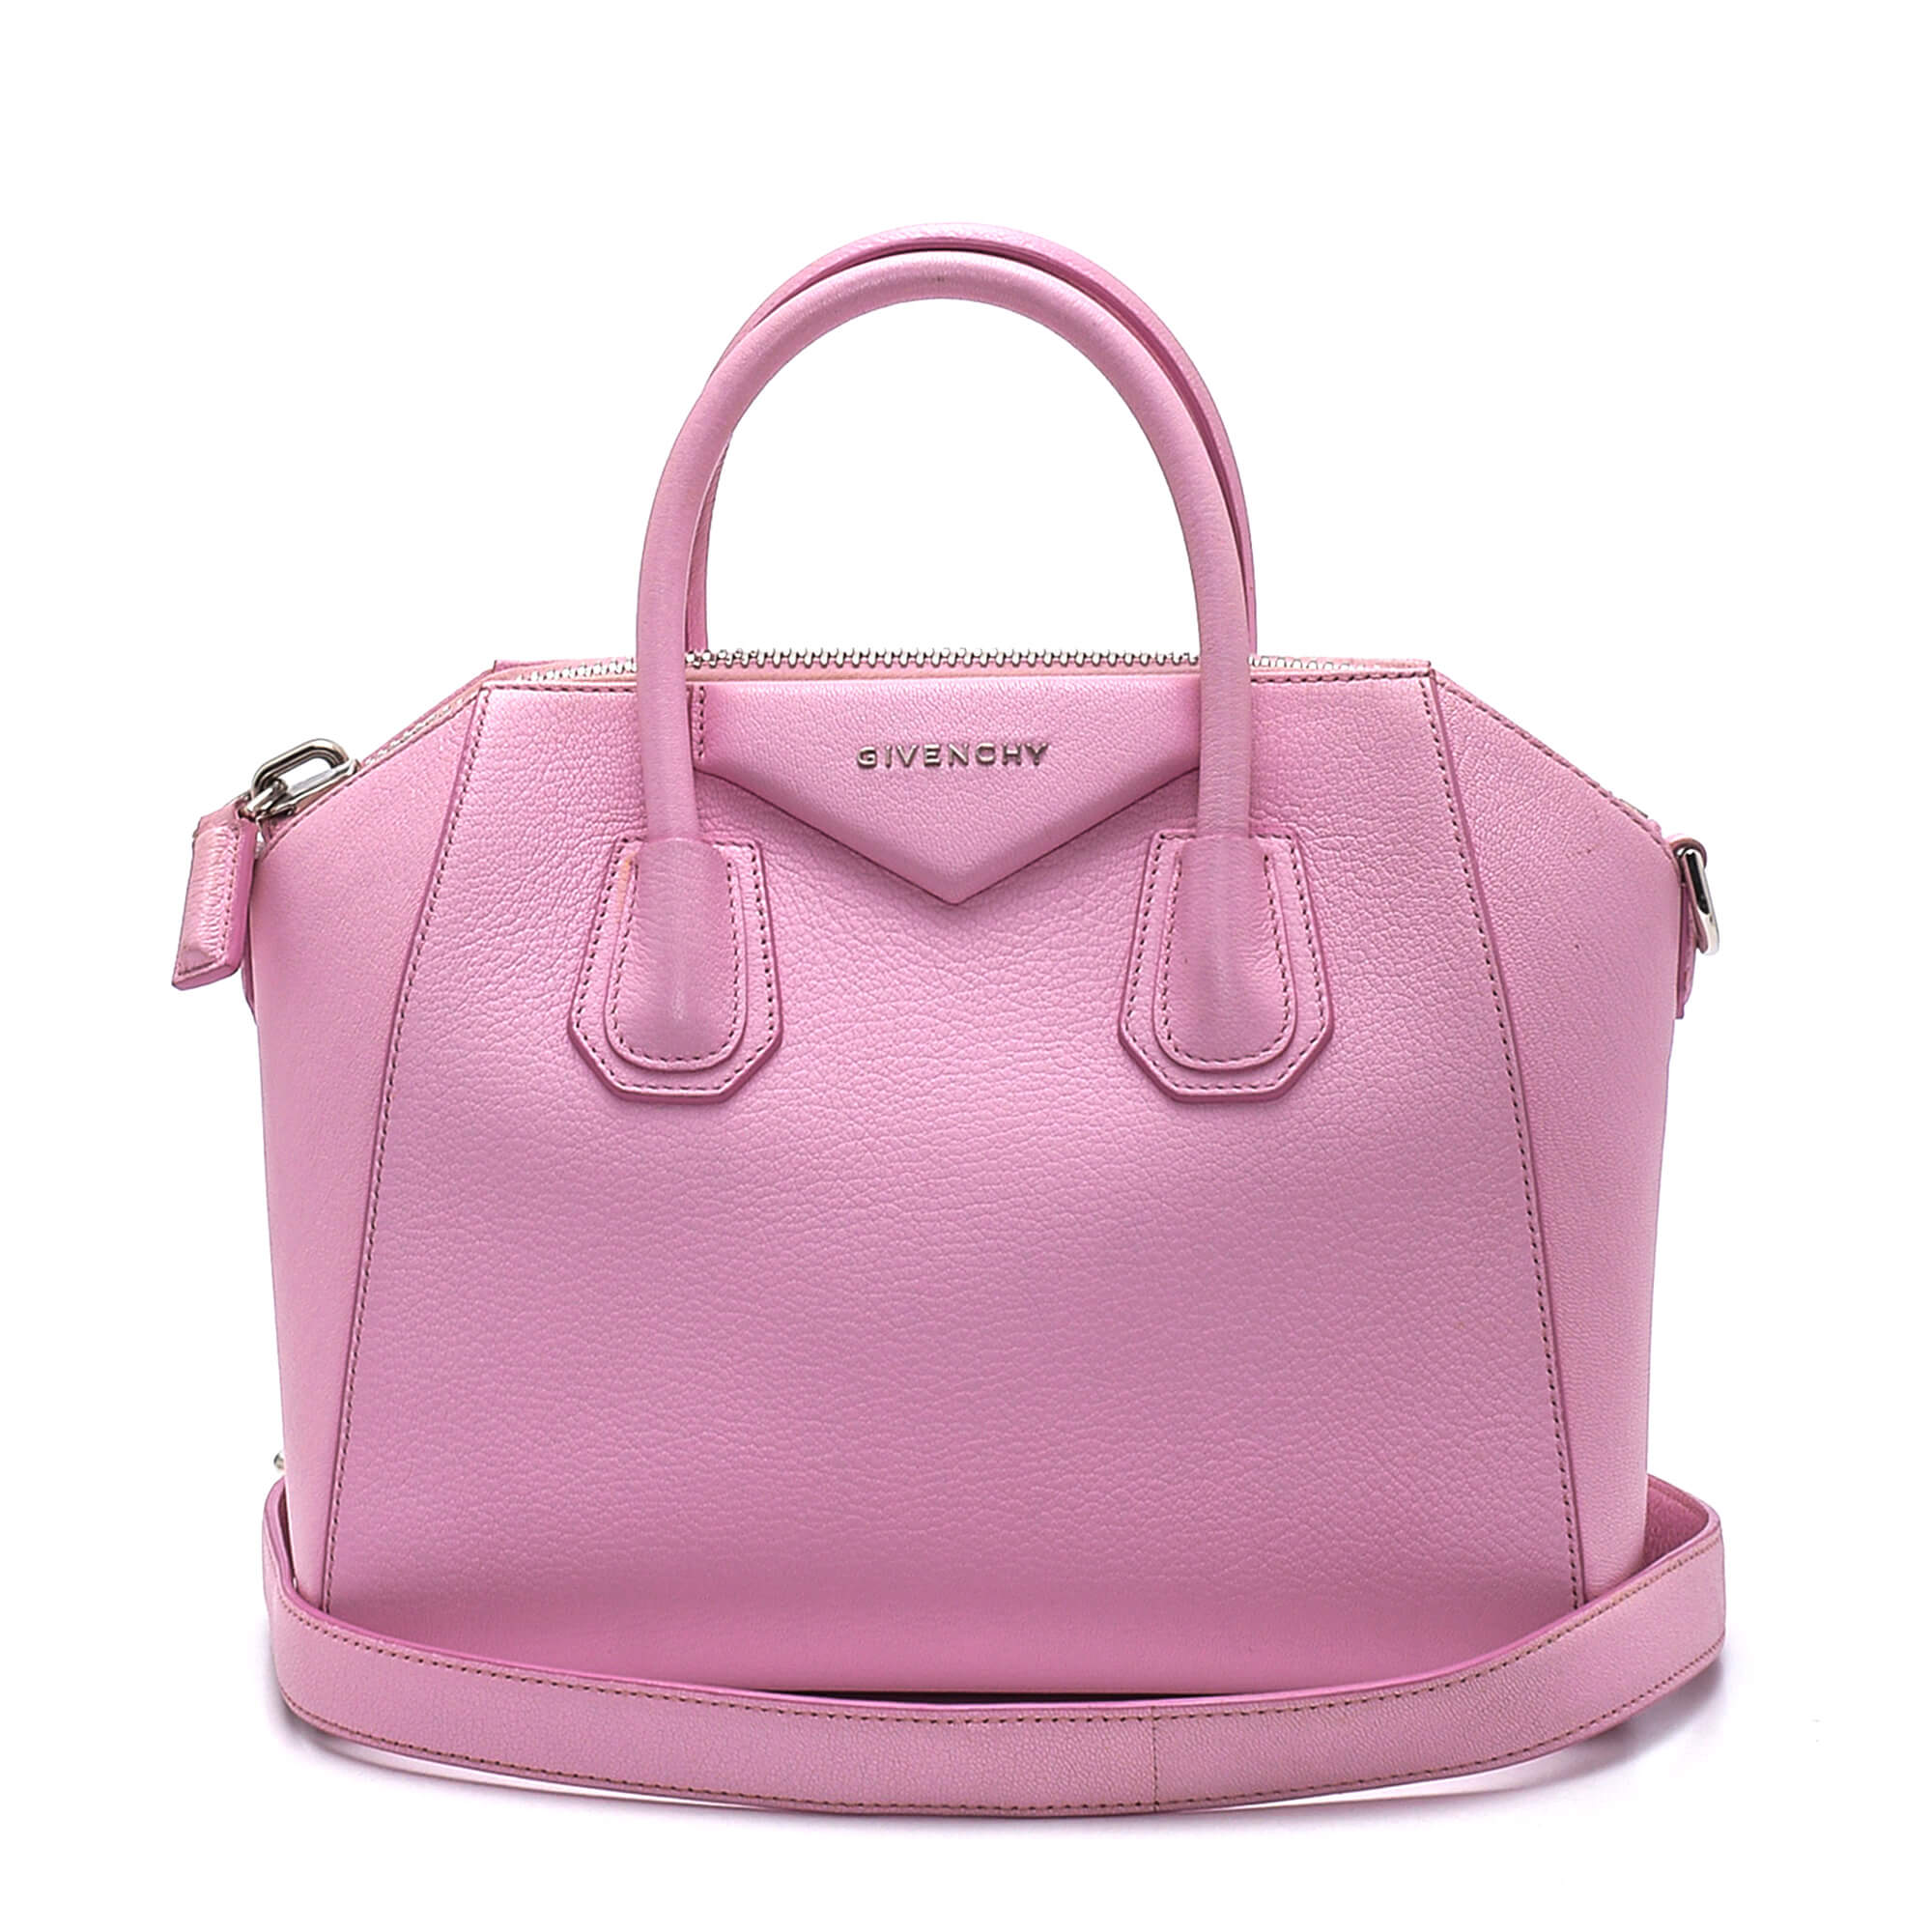 Givenchy - Pink Leather Antigona Small Bag